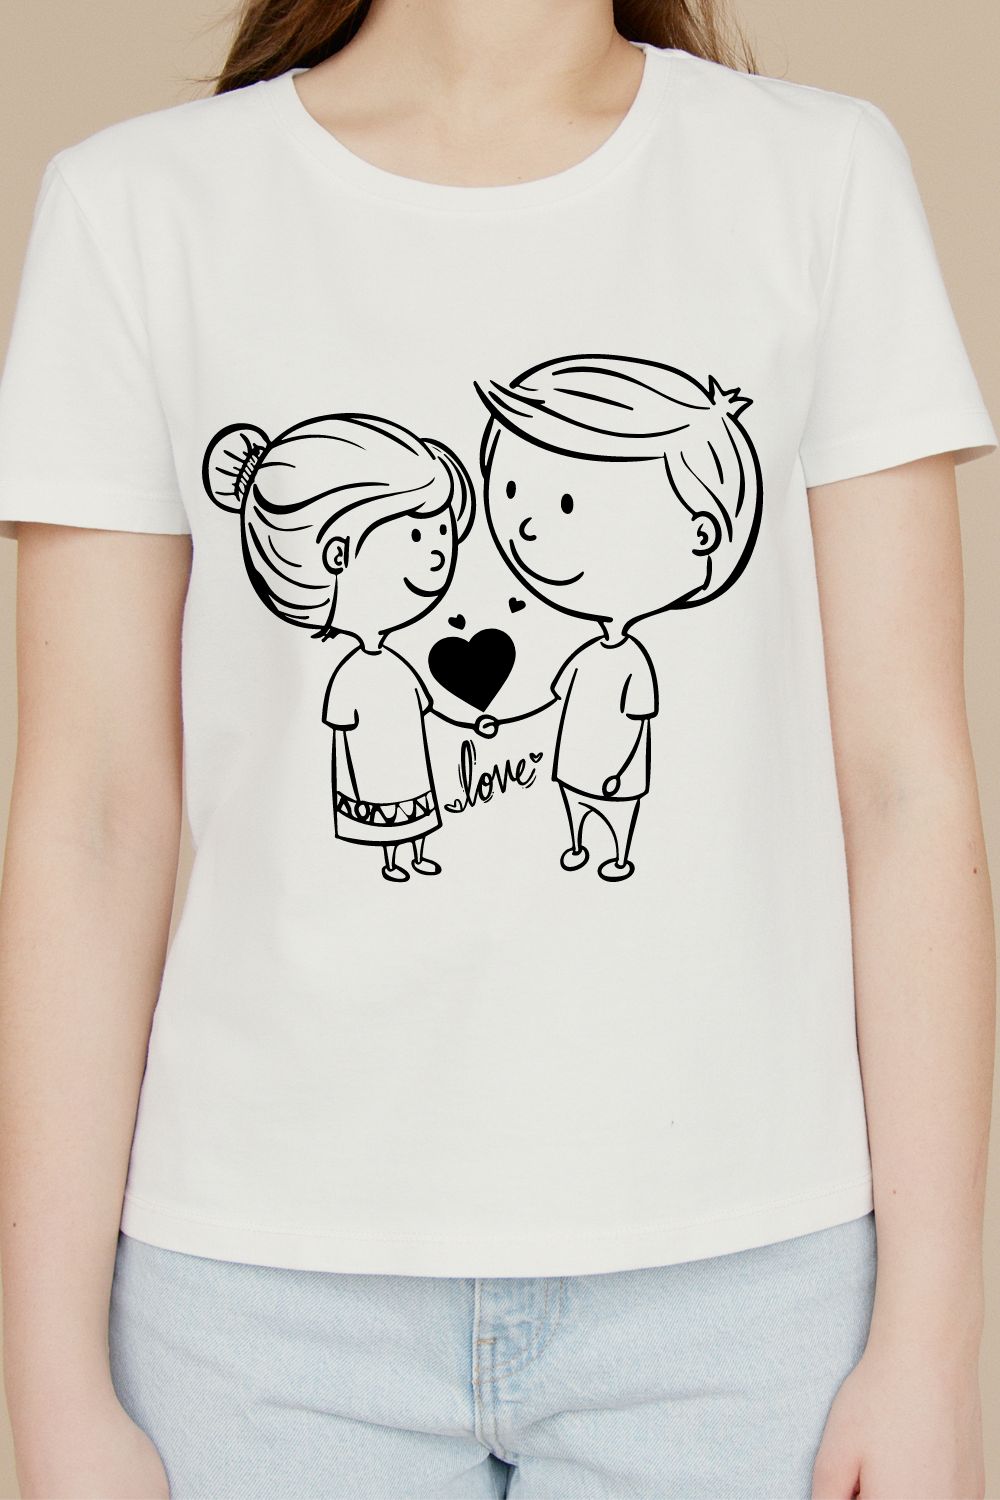 Line art romantic t-shirt design pinterest preview image.